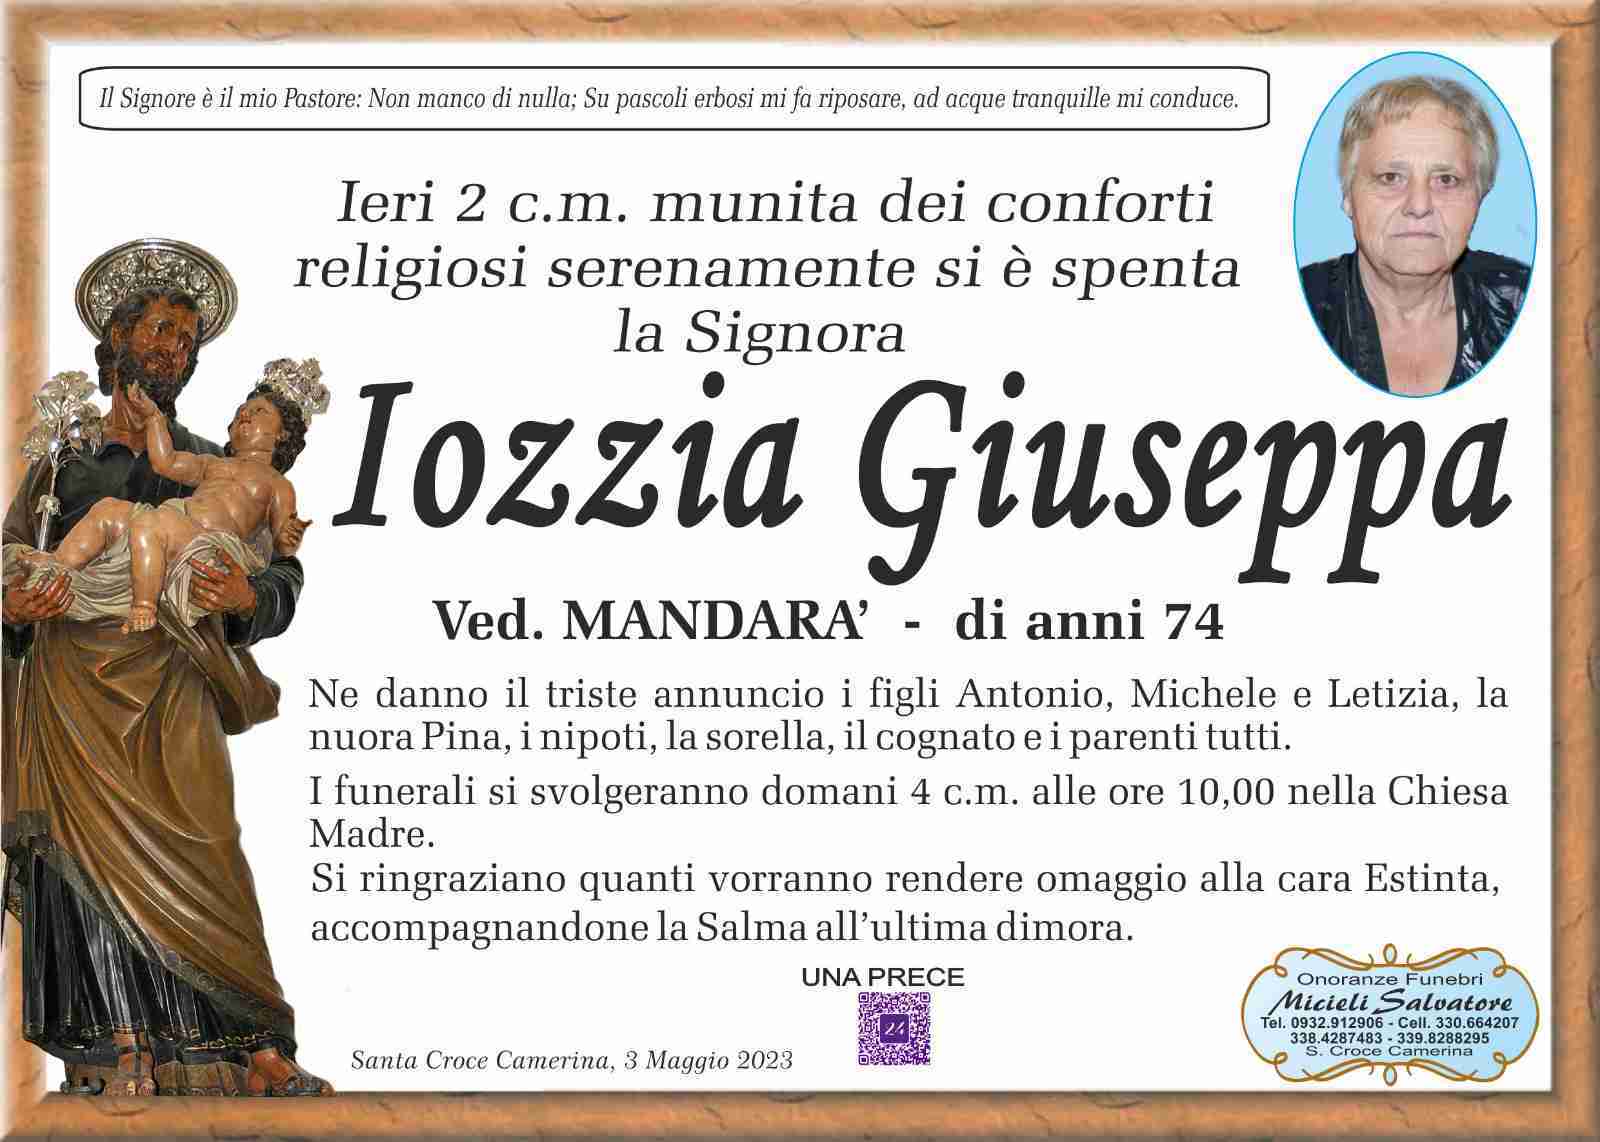 Giuseppa Iozzia